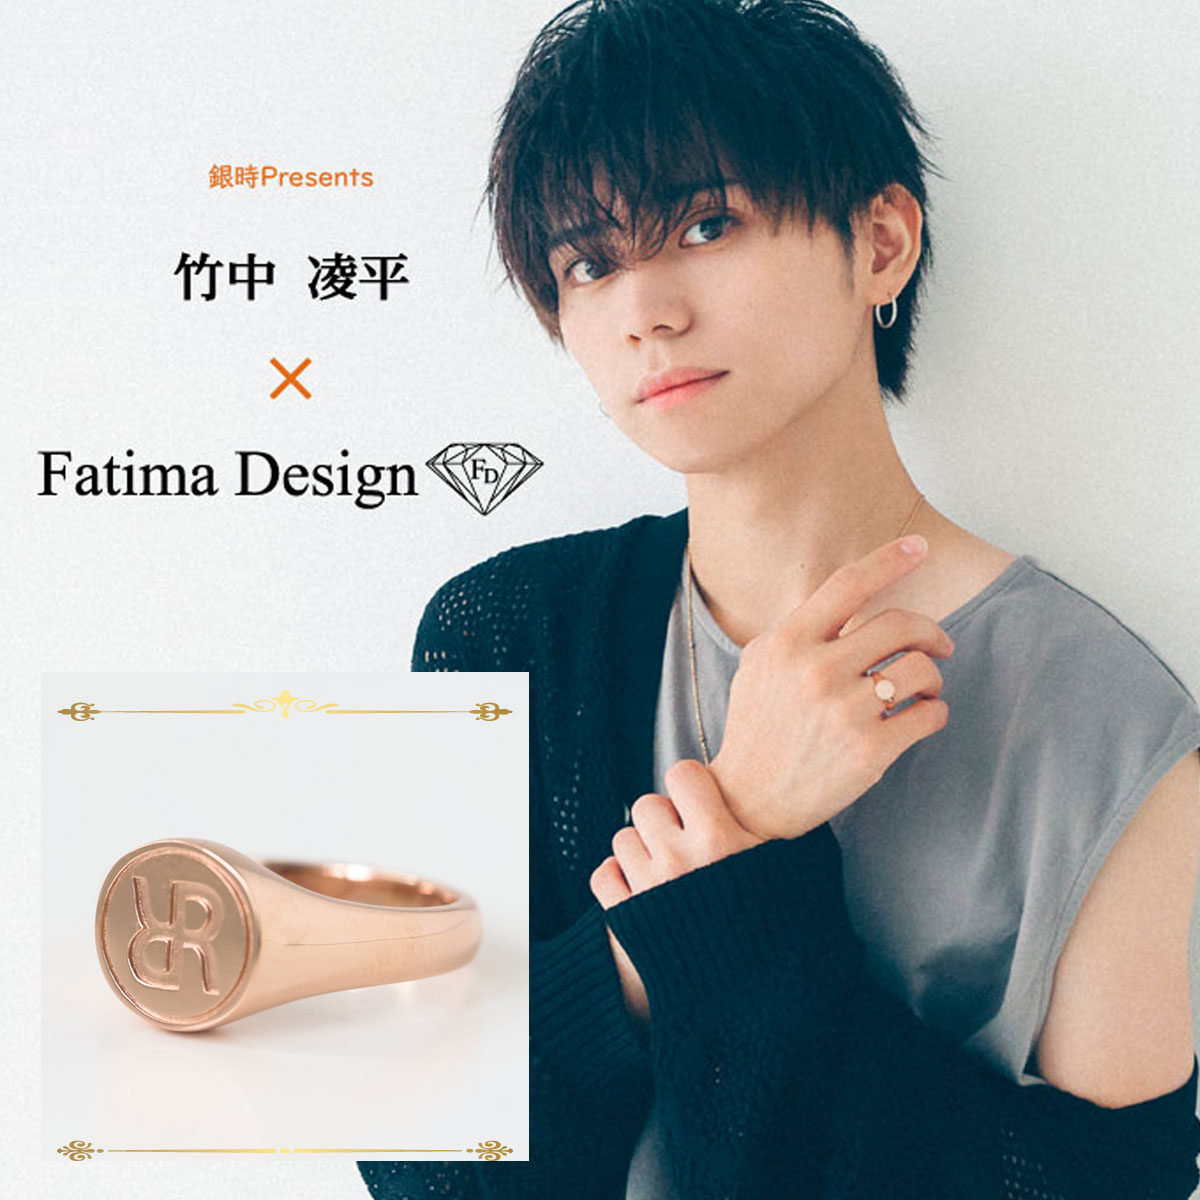 竹中凌平さん× Fatima Design